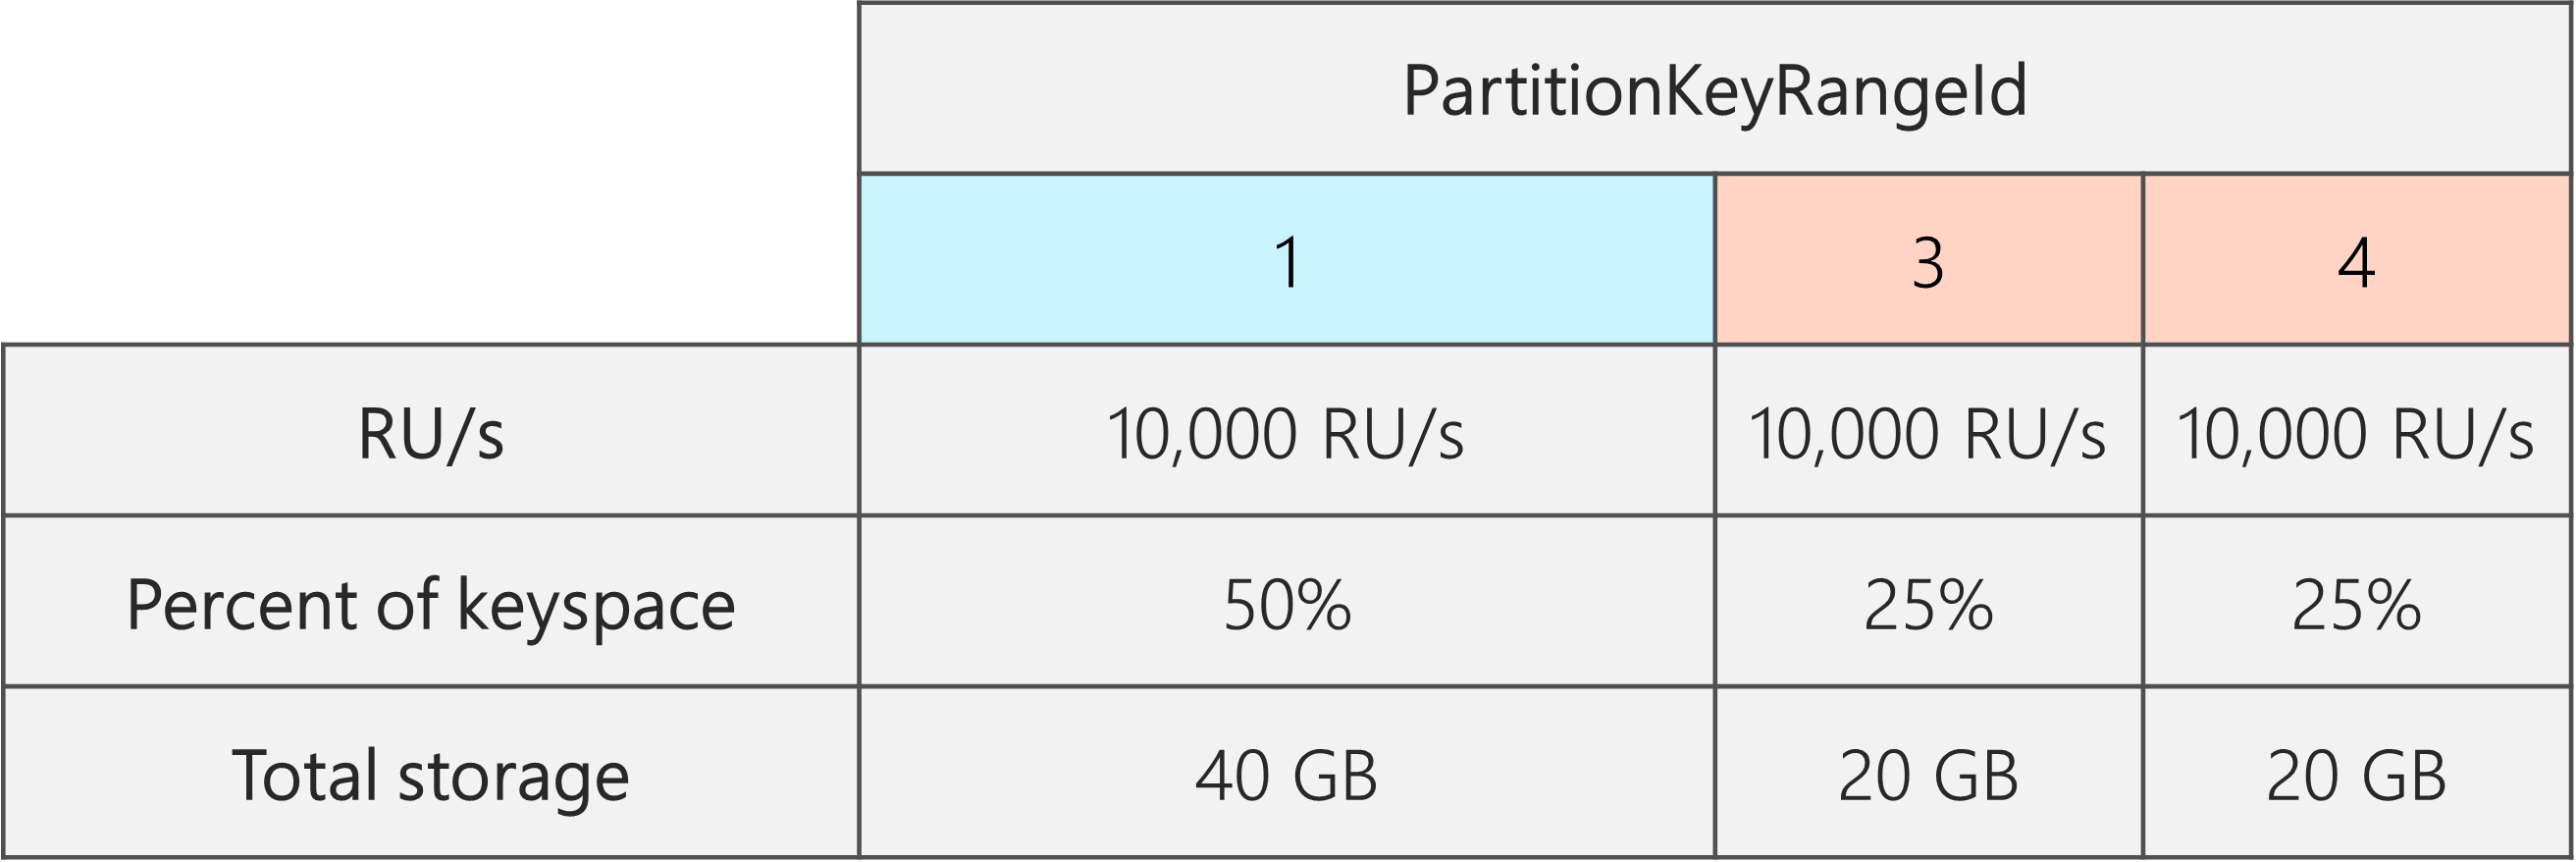 Après le fractionnement, il y a 3 PartitionKeyRangeIds, chacun avec 10 000 RU/s. Toutefois, l’un des PartitionKeyRangeIds a 50 % de l’espace de clés total (40 Go), tandis que les deux autres PartitionKeyRangeIds ont respectivement 25 % de l’espace de clés total (20 Go)